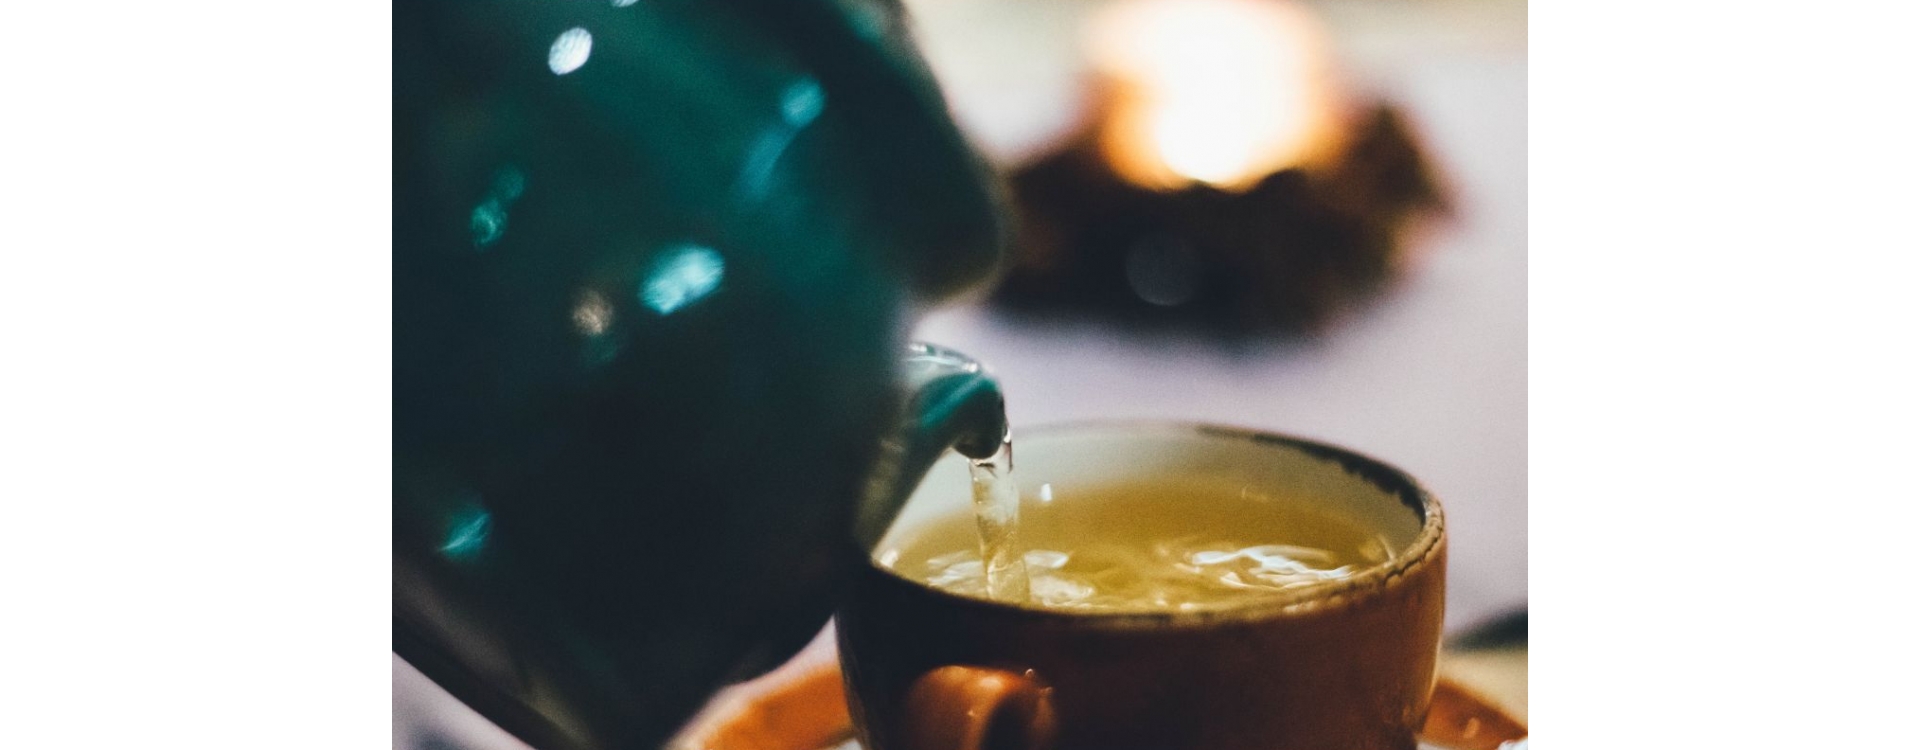 Learn How To Make Magic Truffle Tea in 5 Easy Steps!